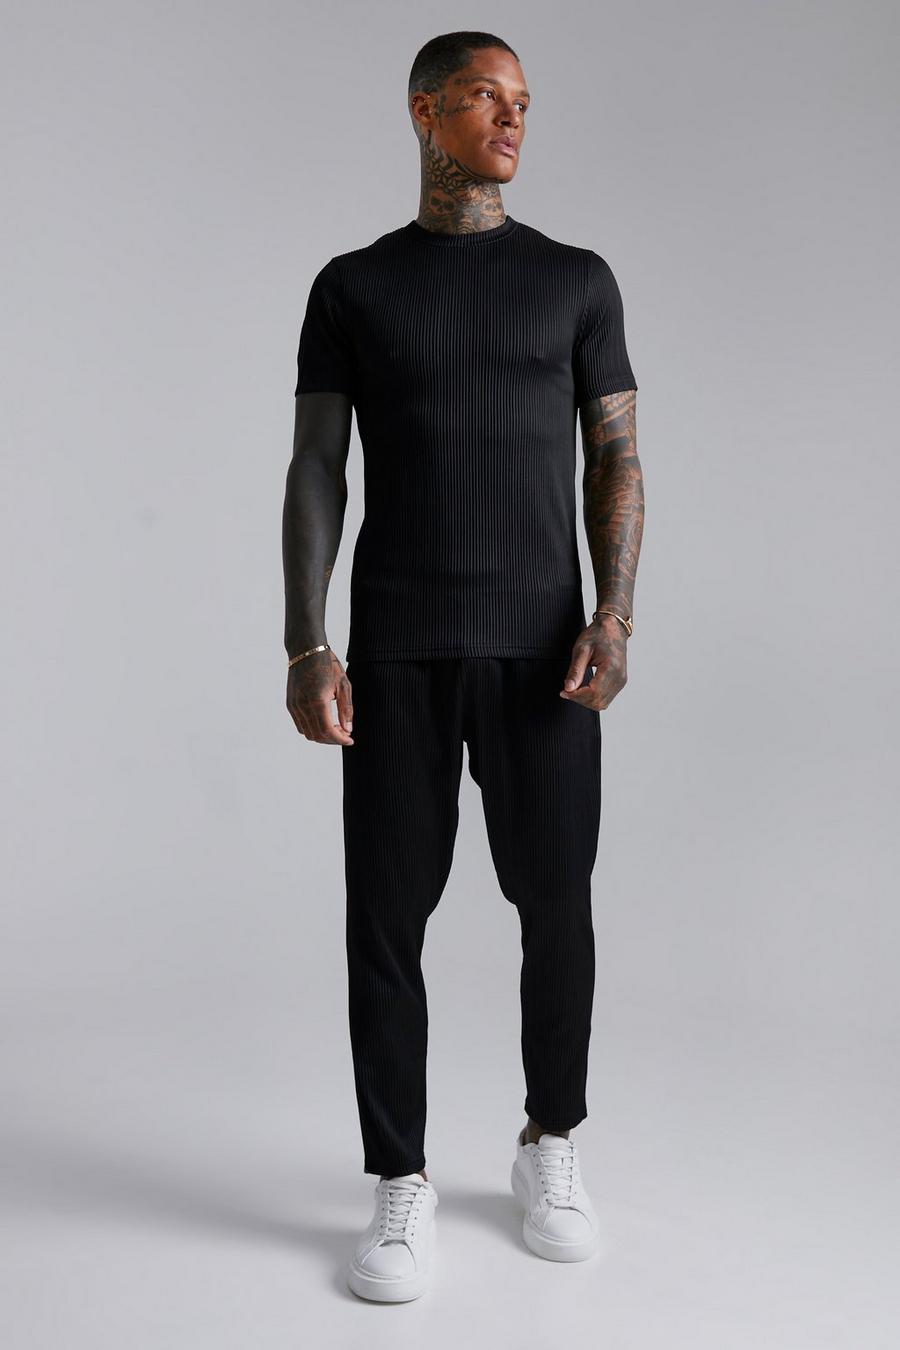 Conjunto de pantalón deportivo y camisa plisada ajustada al músculo, Black negro